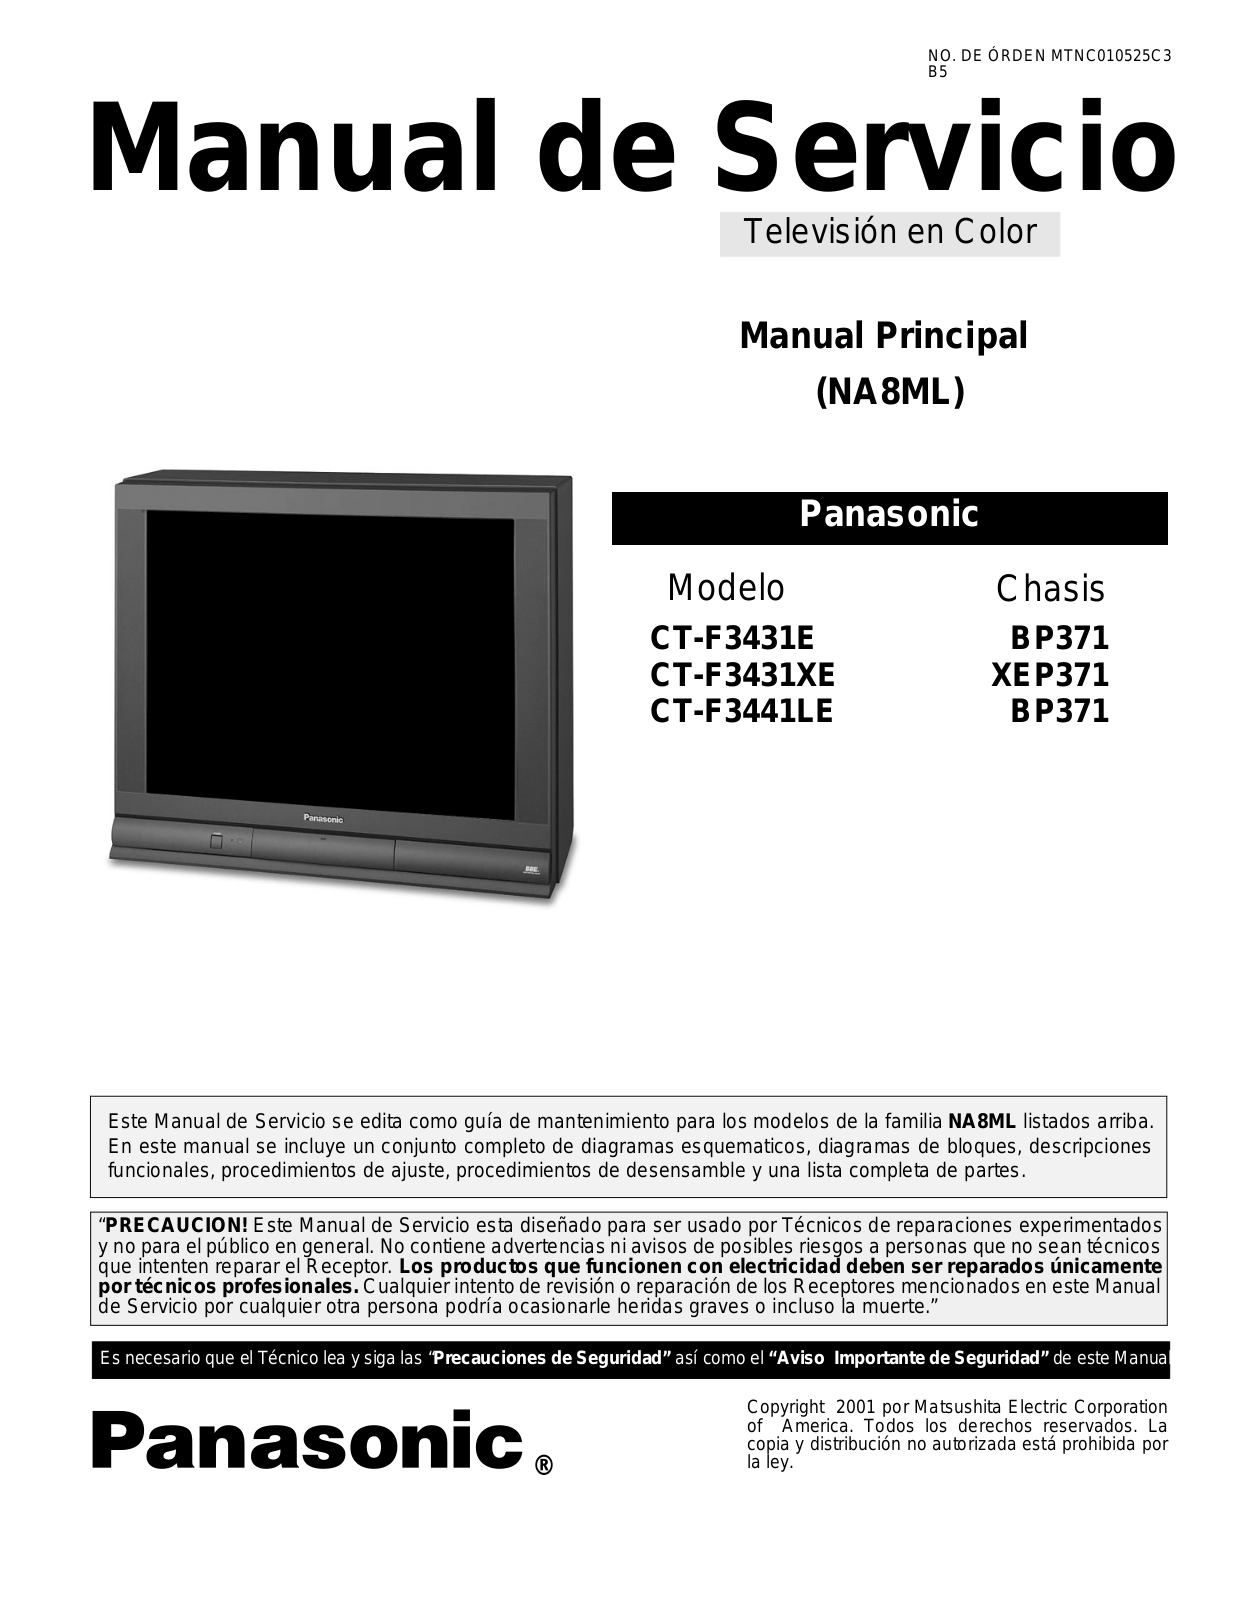 Panasonic CTF3431, CT-F3431E Schematic